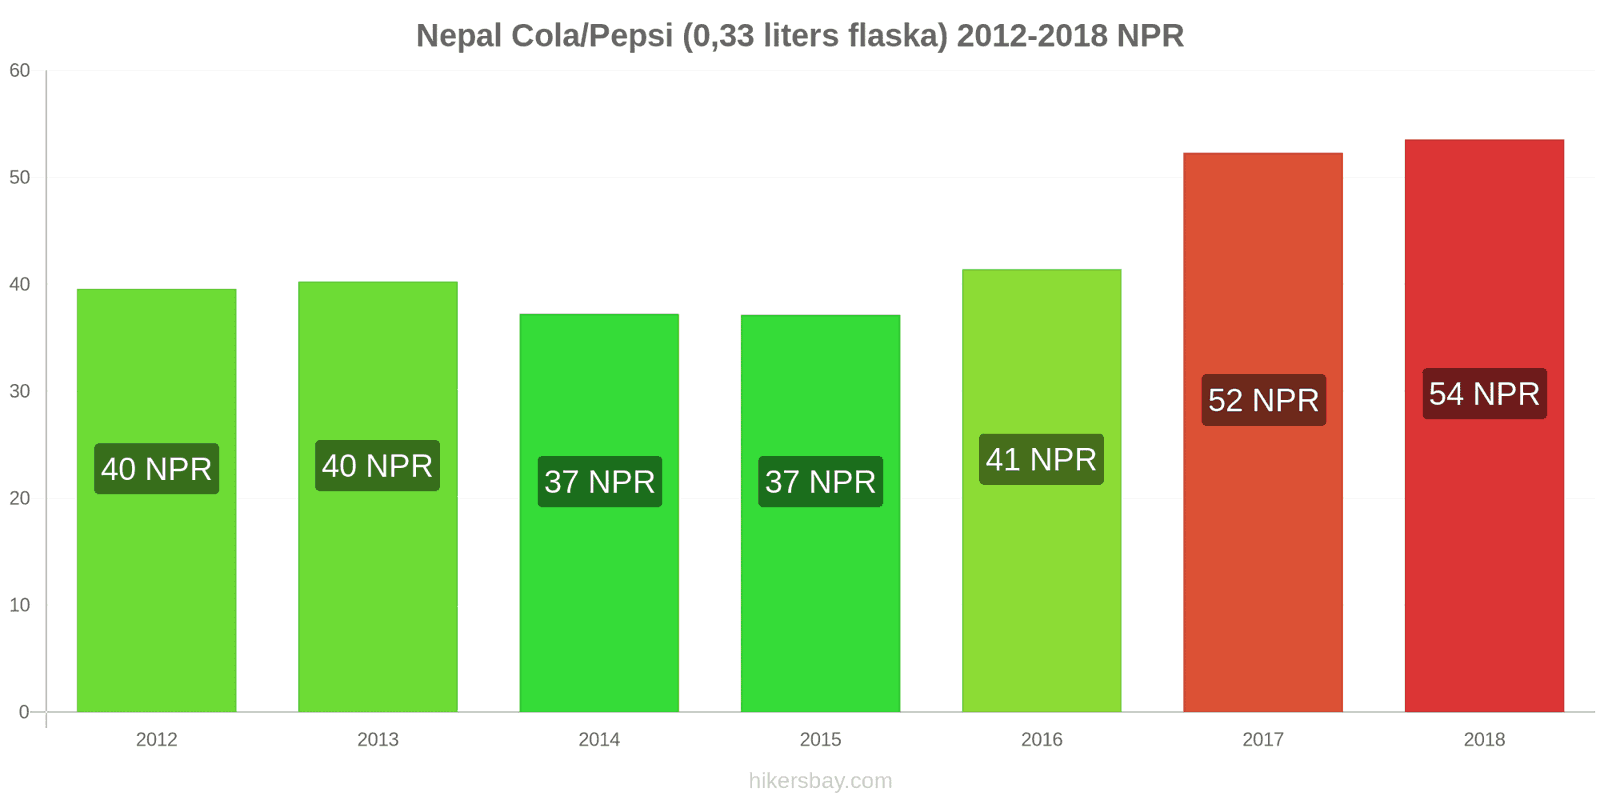 Nepal prisändringar Coca-Cola/Pepsi (0.33 liters flaska) hikersbay.com